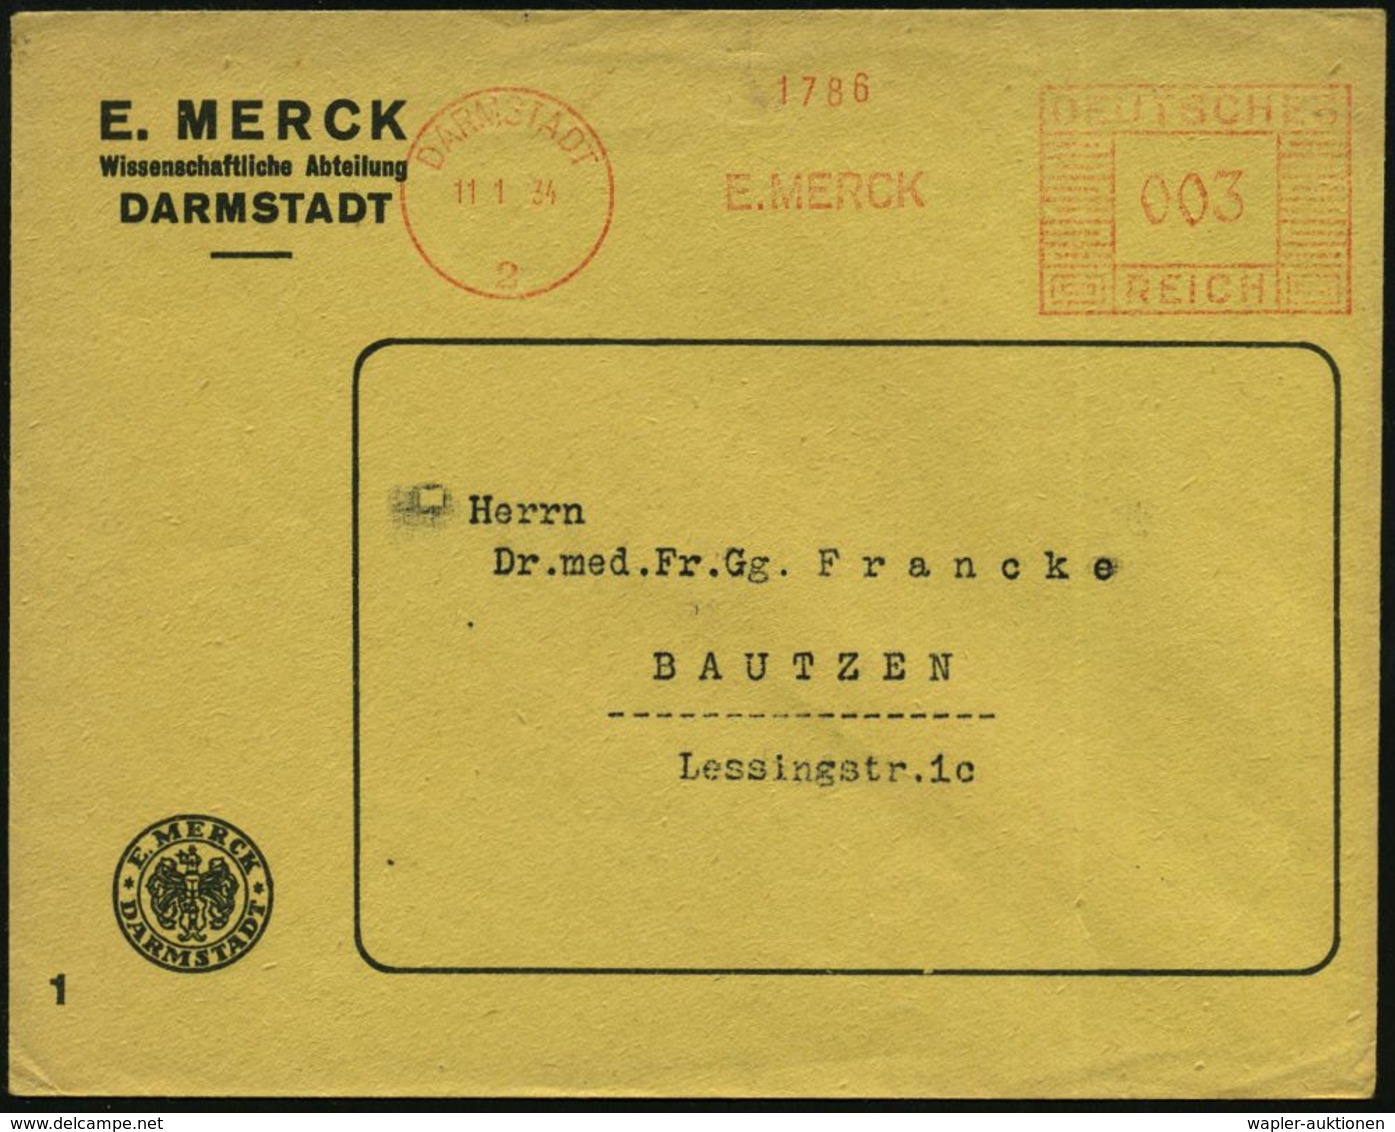 CHEMIE / PRODUKTE / CHEMISCHE INDUSTRIE : DARMSTADT/ 2/ E.MERCK 1934 (11.1.) AFS Auf Firmen-Bf.: E. MERCK Mit Firmen-Log - Chemistry